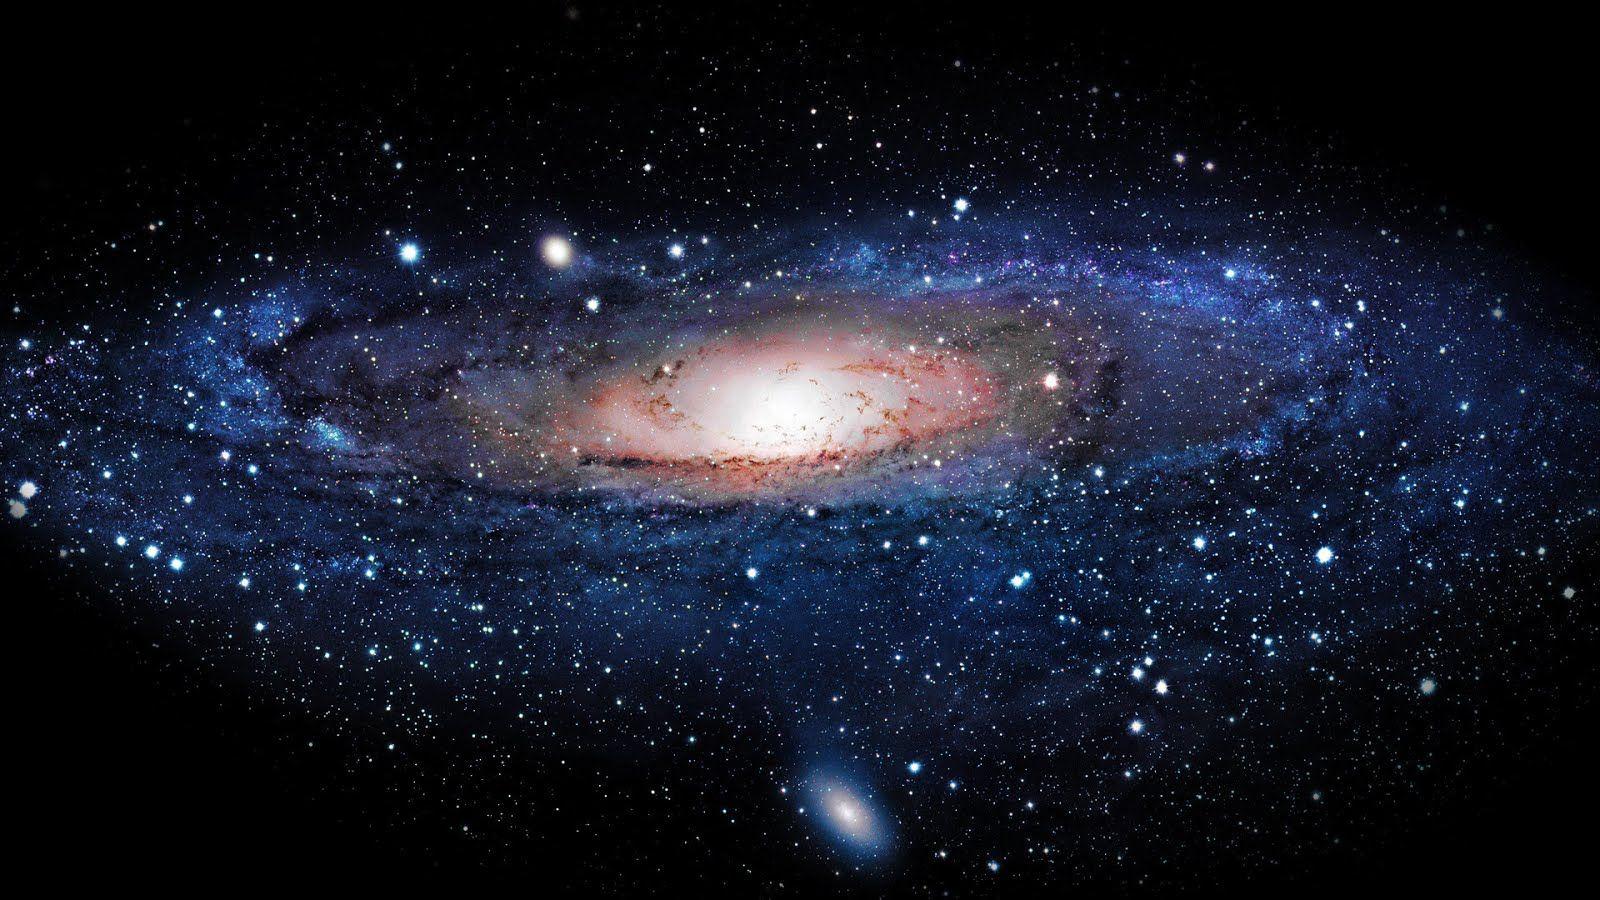 Wallpaper 3D Milky Way sẽ đưa bạn vào một chuyến phiêu lưu mới khám phá tuyệt vời của vũ trụ. Với chất lượng hình ảnh sắc nét và sống động, bạn sẽ cảm nhận được như đang đứng trên một hành tinh xa lạ nhìn về một chòm sao đầy màu sắc. Hãy thưởng thức wallpaper này để trải nghiệm tuyệt vời này.